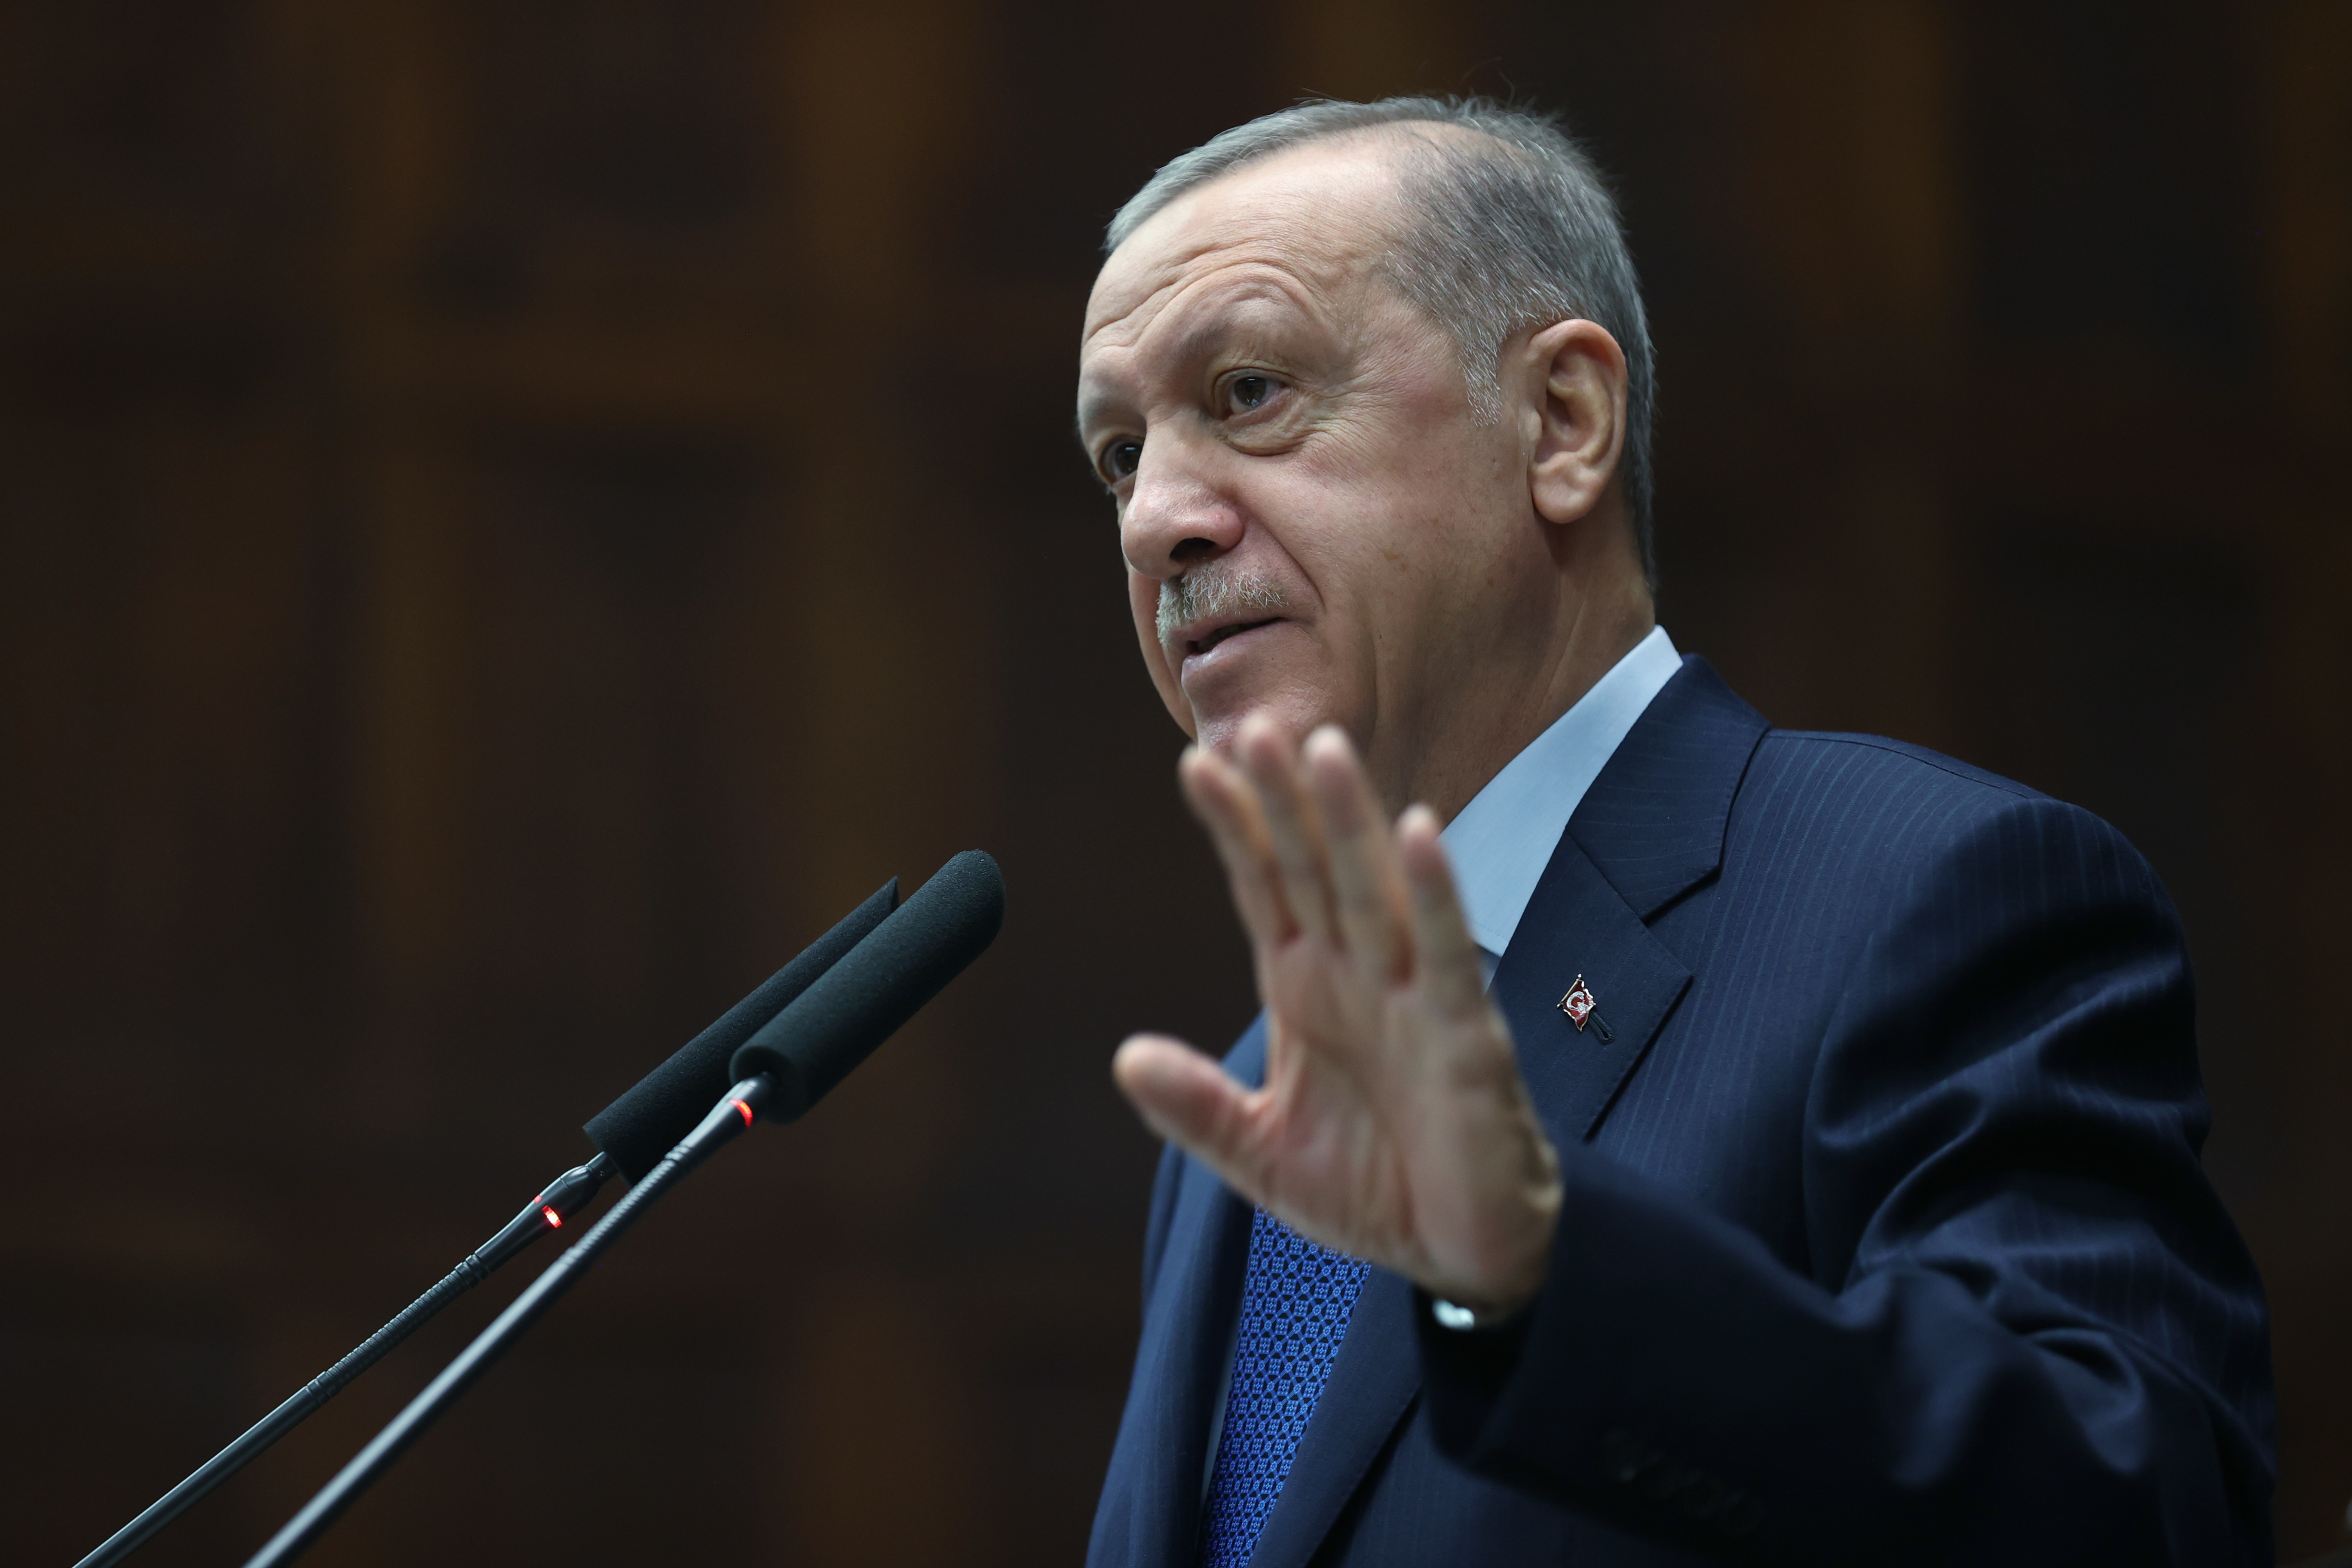 Cumhurbaşkanı Erdoğan'dan CHP'nin teklifine tepki: Eğer samimiysen gelin çözümü yasa değil anayasa düzeyinden sağlayalım